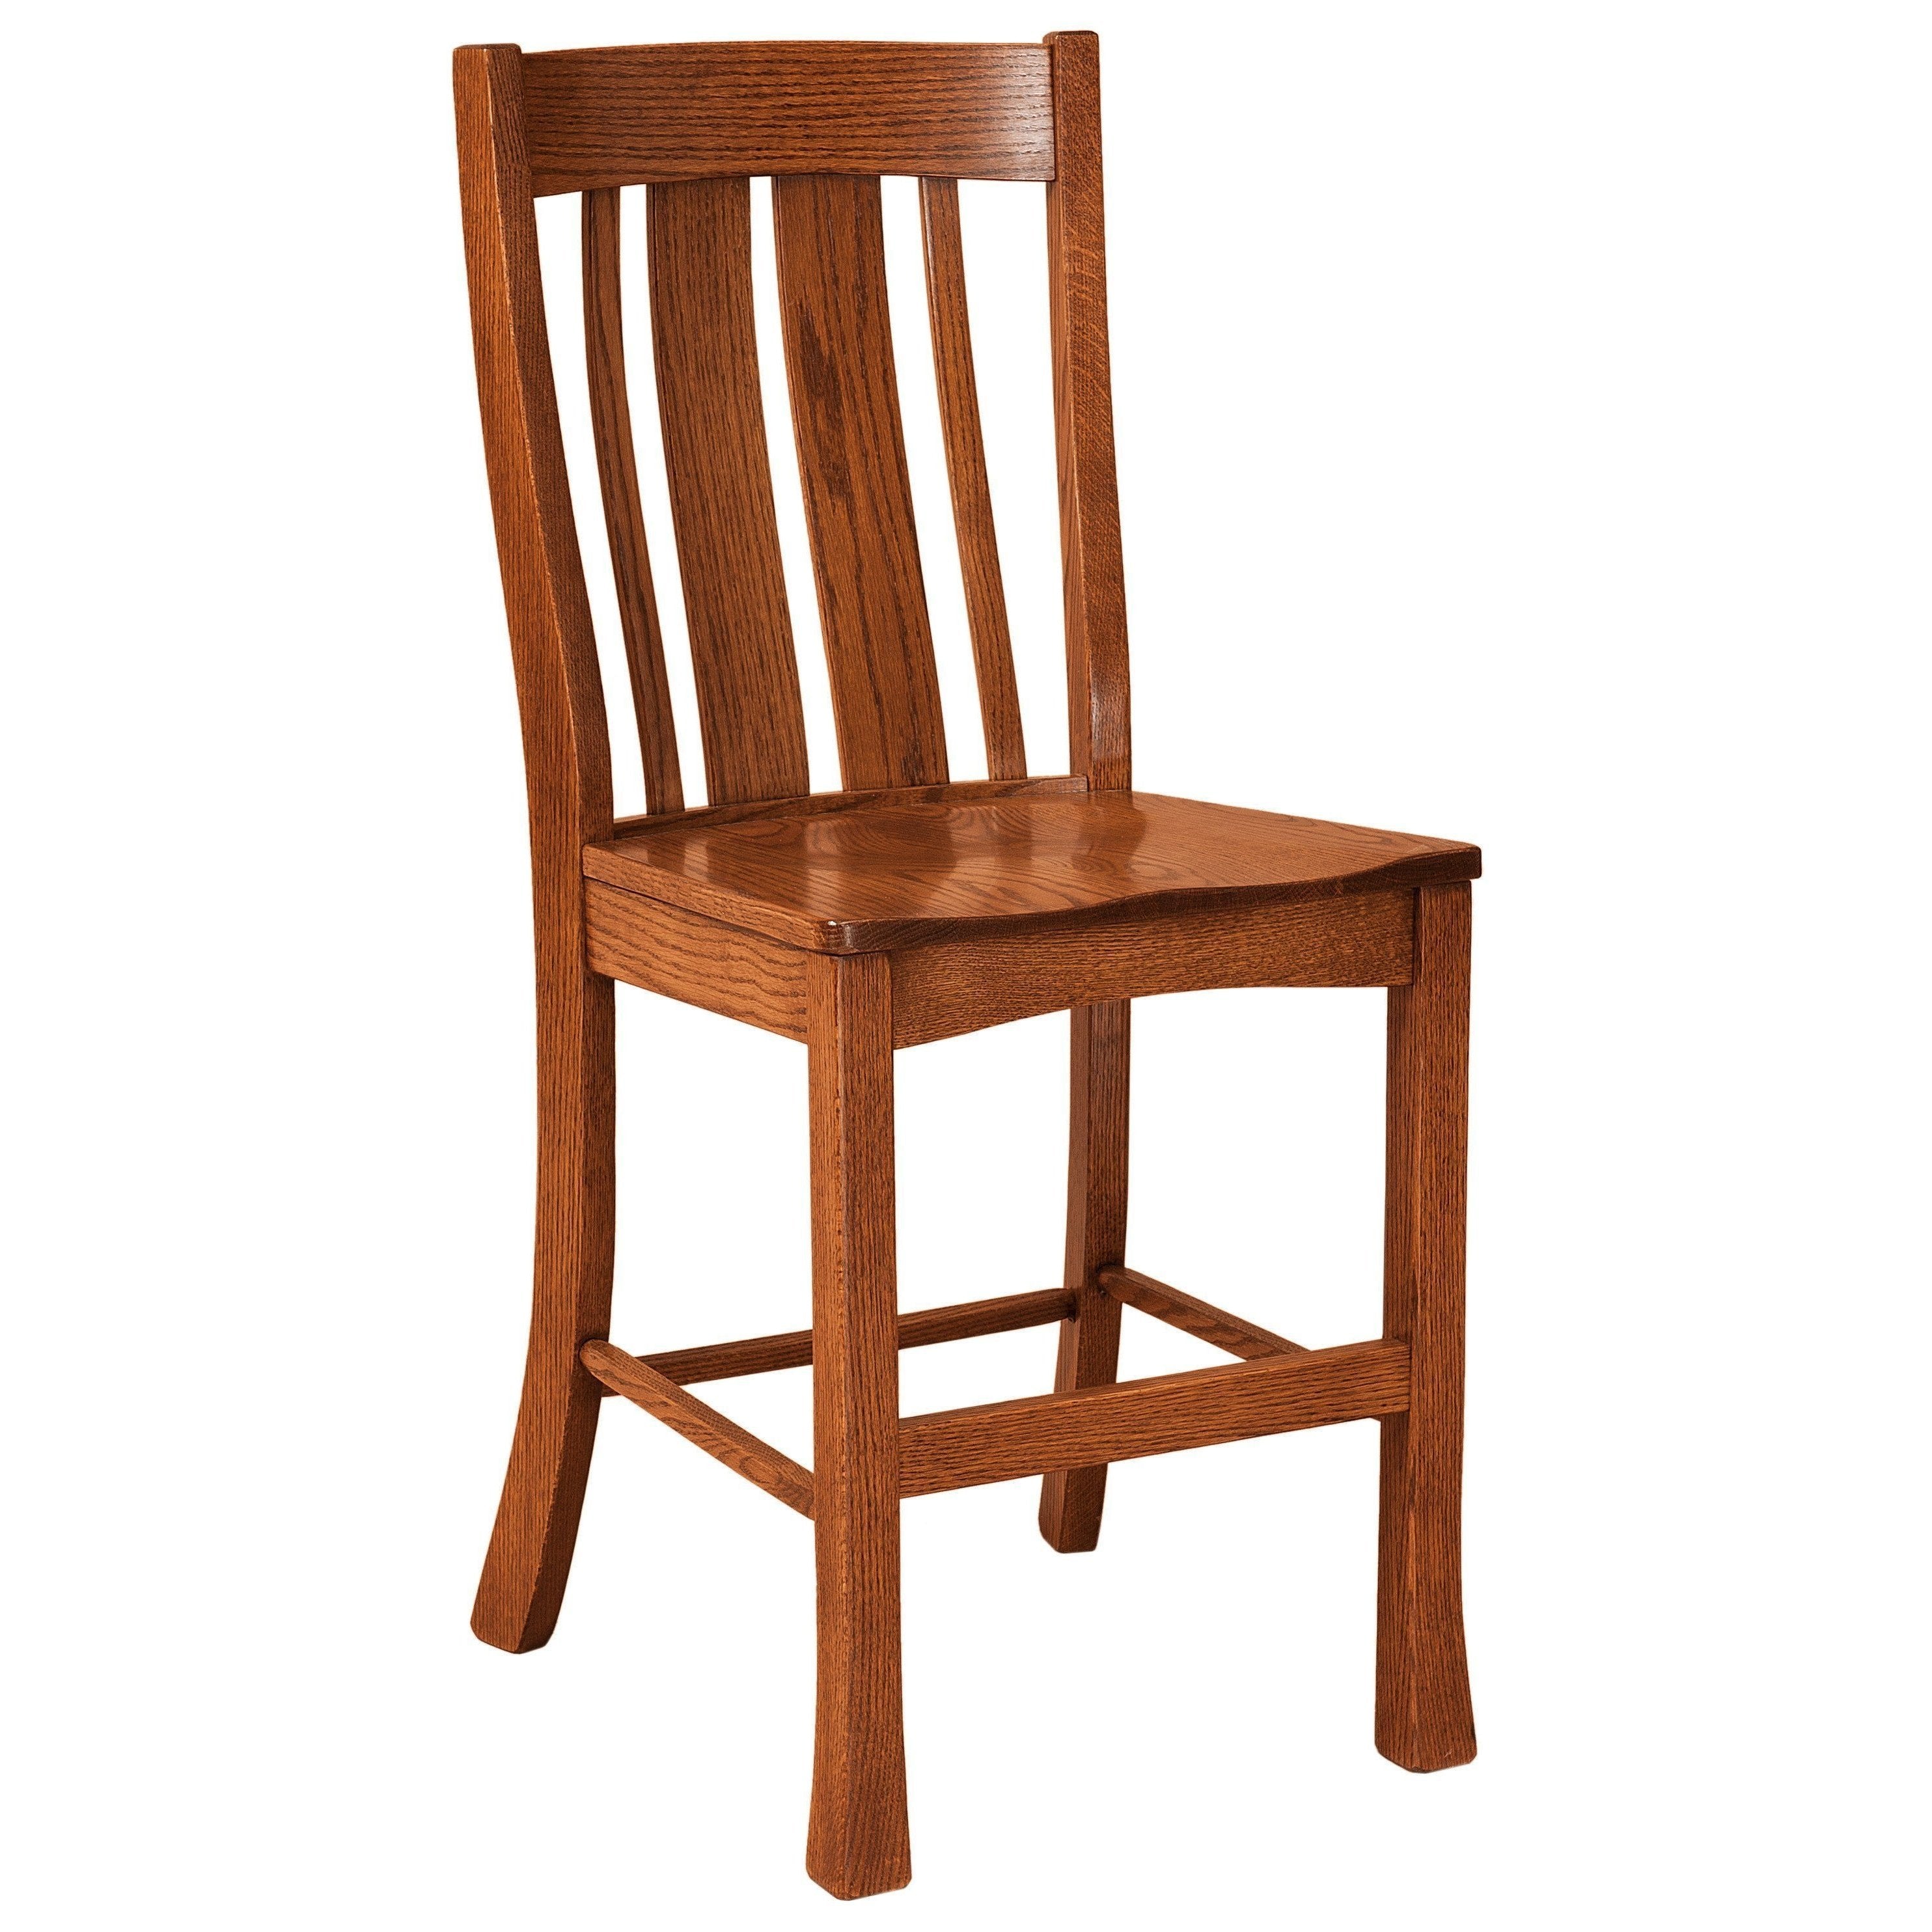 breckenridge-bar-chair-260058.jpg